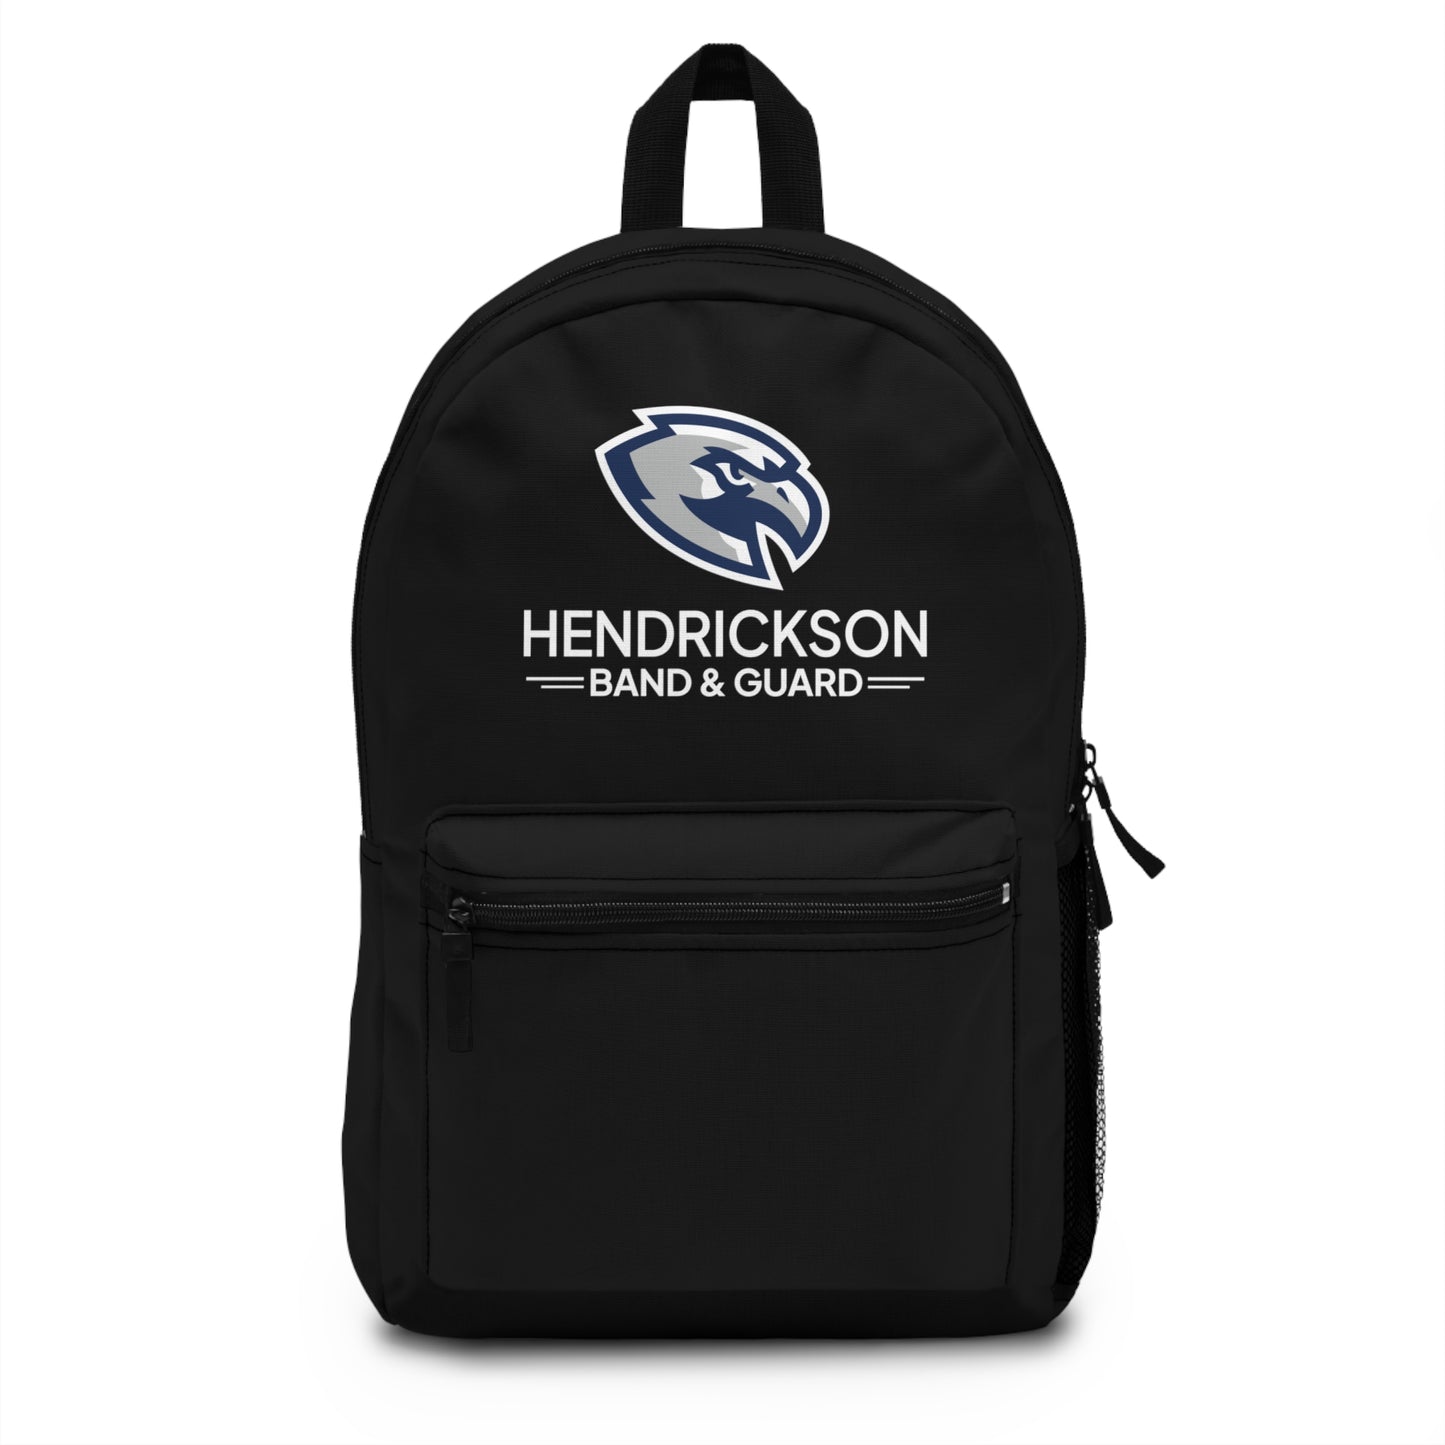 Hendrickson Backpack